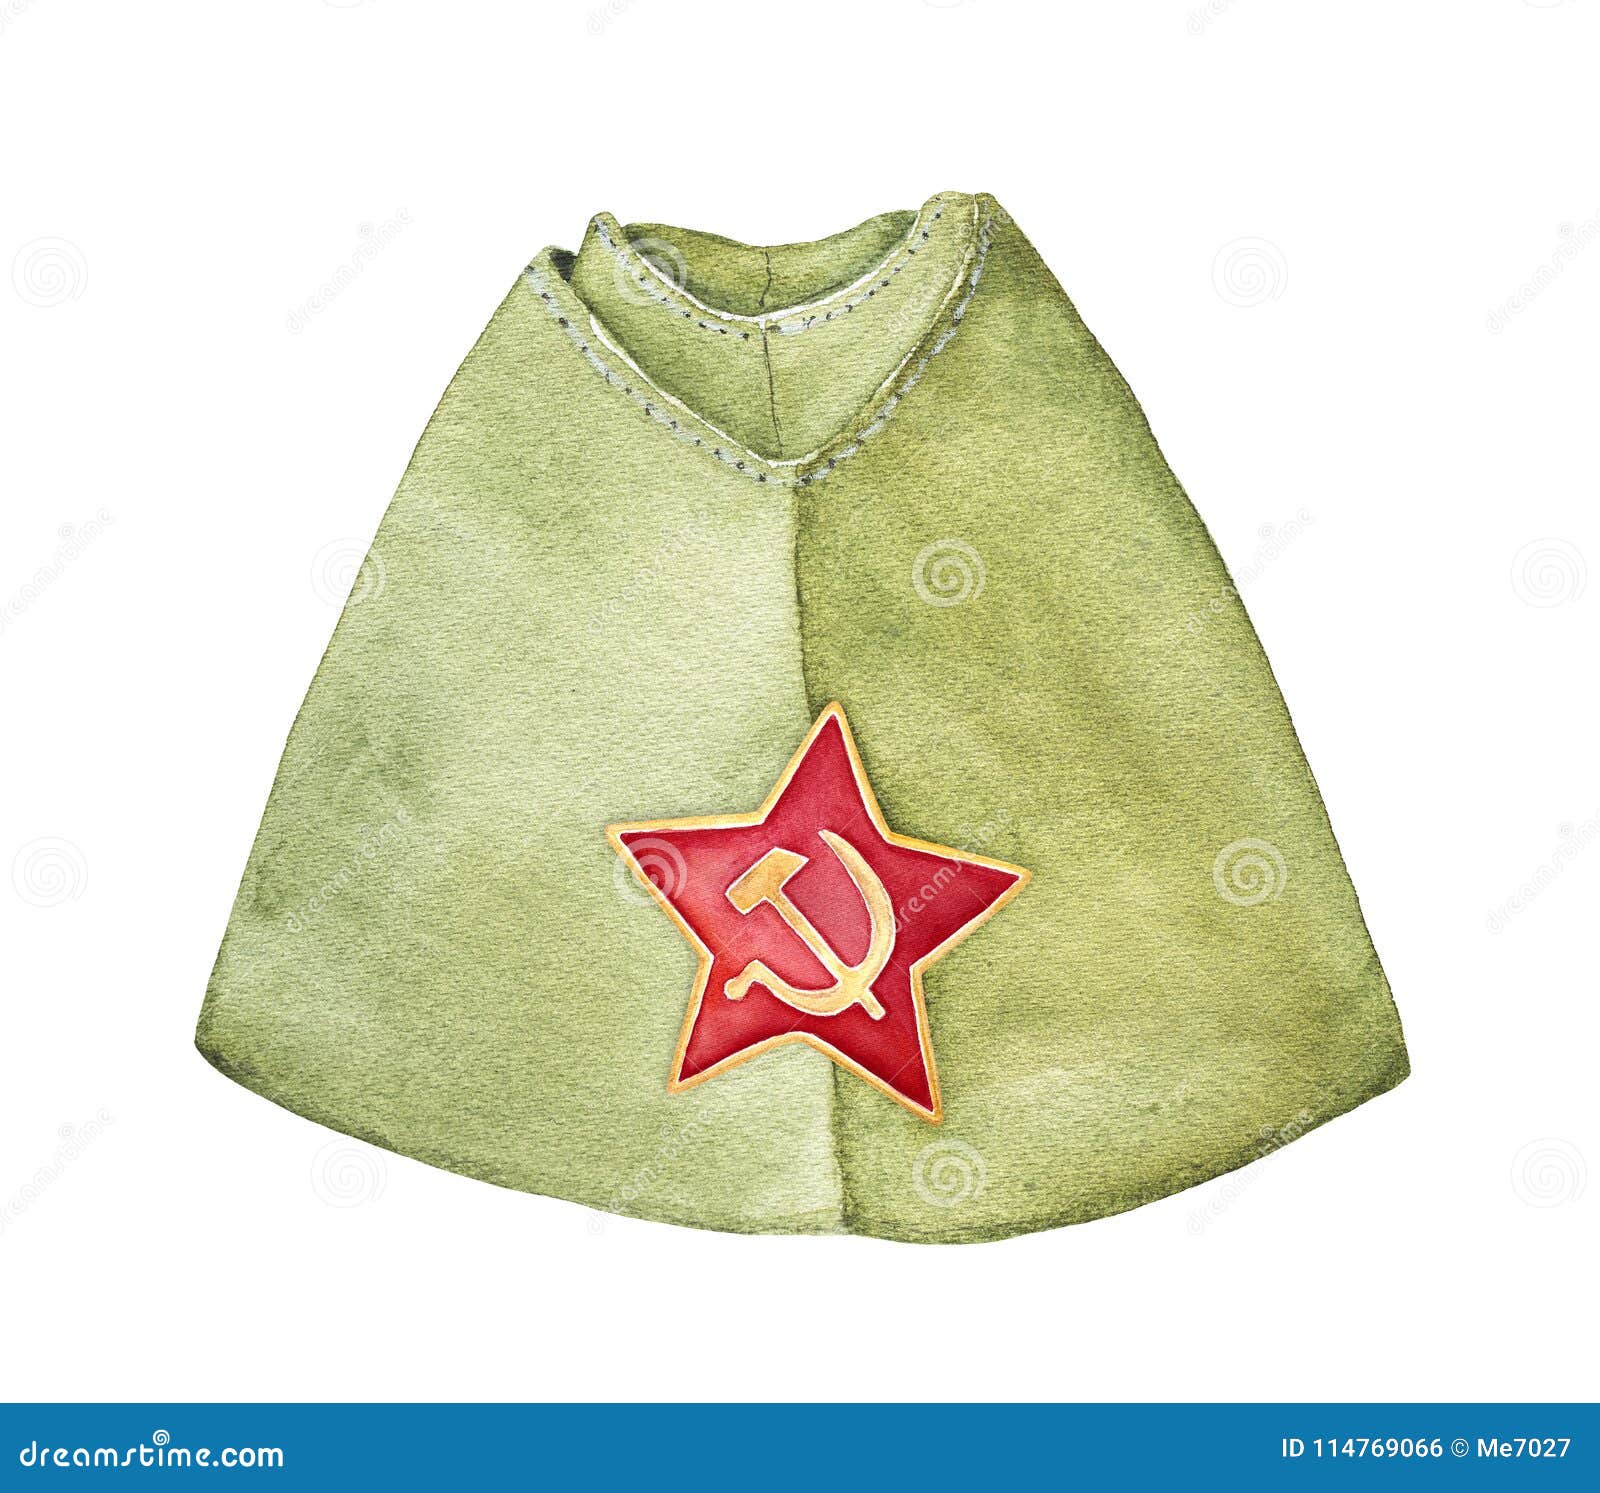 Bustina militare militare russa con il distintivo rosso della stella, vista frontale. La maggior parte del tipo comune di cappuccio usato dall'Armata Rossa durante il WWII e dopo fino agli anni 80 Grafico acquerello disegnato a mano che attinge bianco, isolato